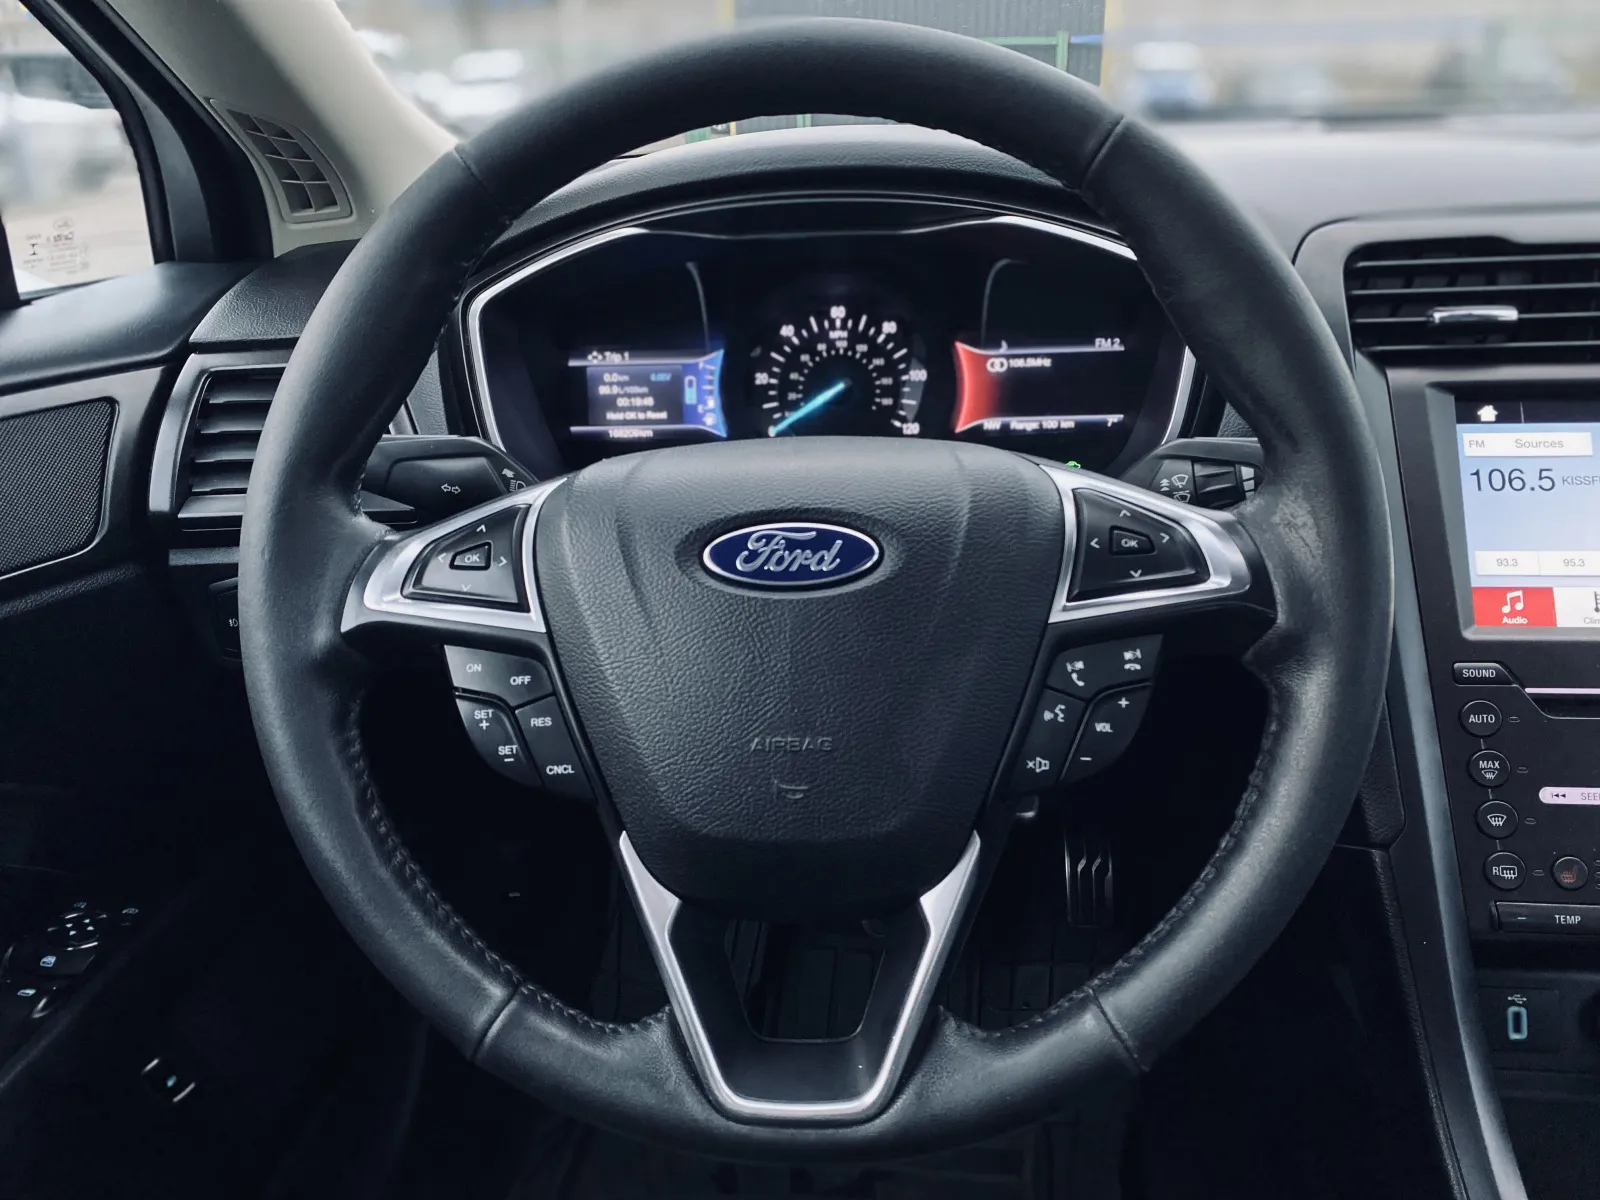 Ford Fusion 2017 гібрид купити авто в лізинг Автомані